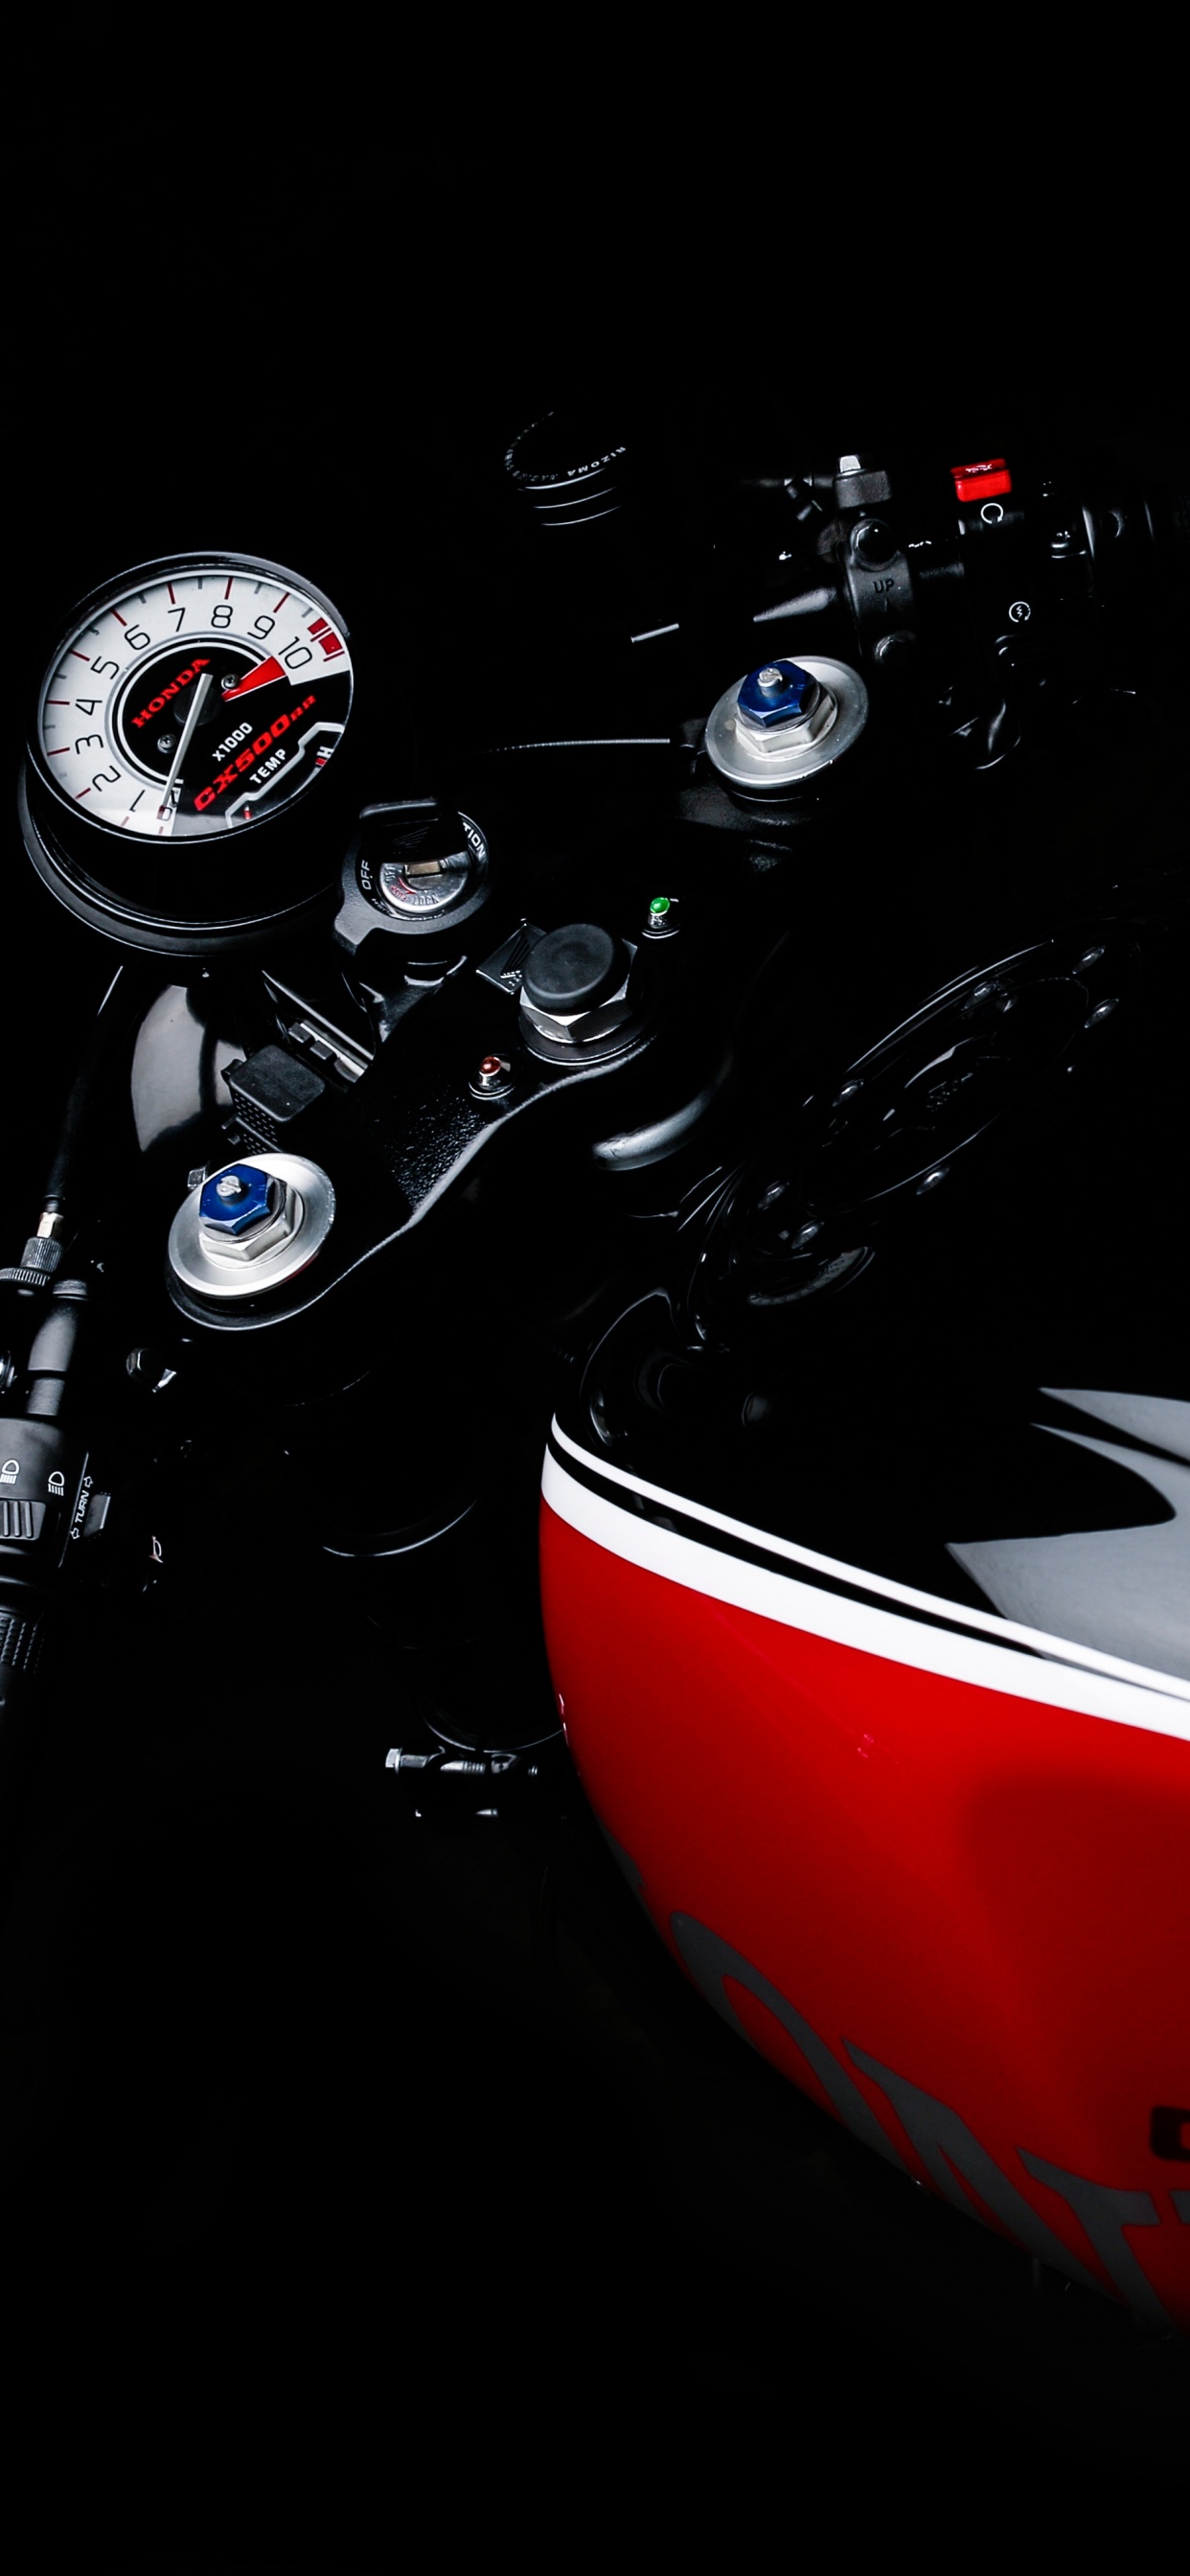 Motocicleta Honda Roja y Negra. Wallpaper in 1242x2688 Resolution